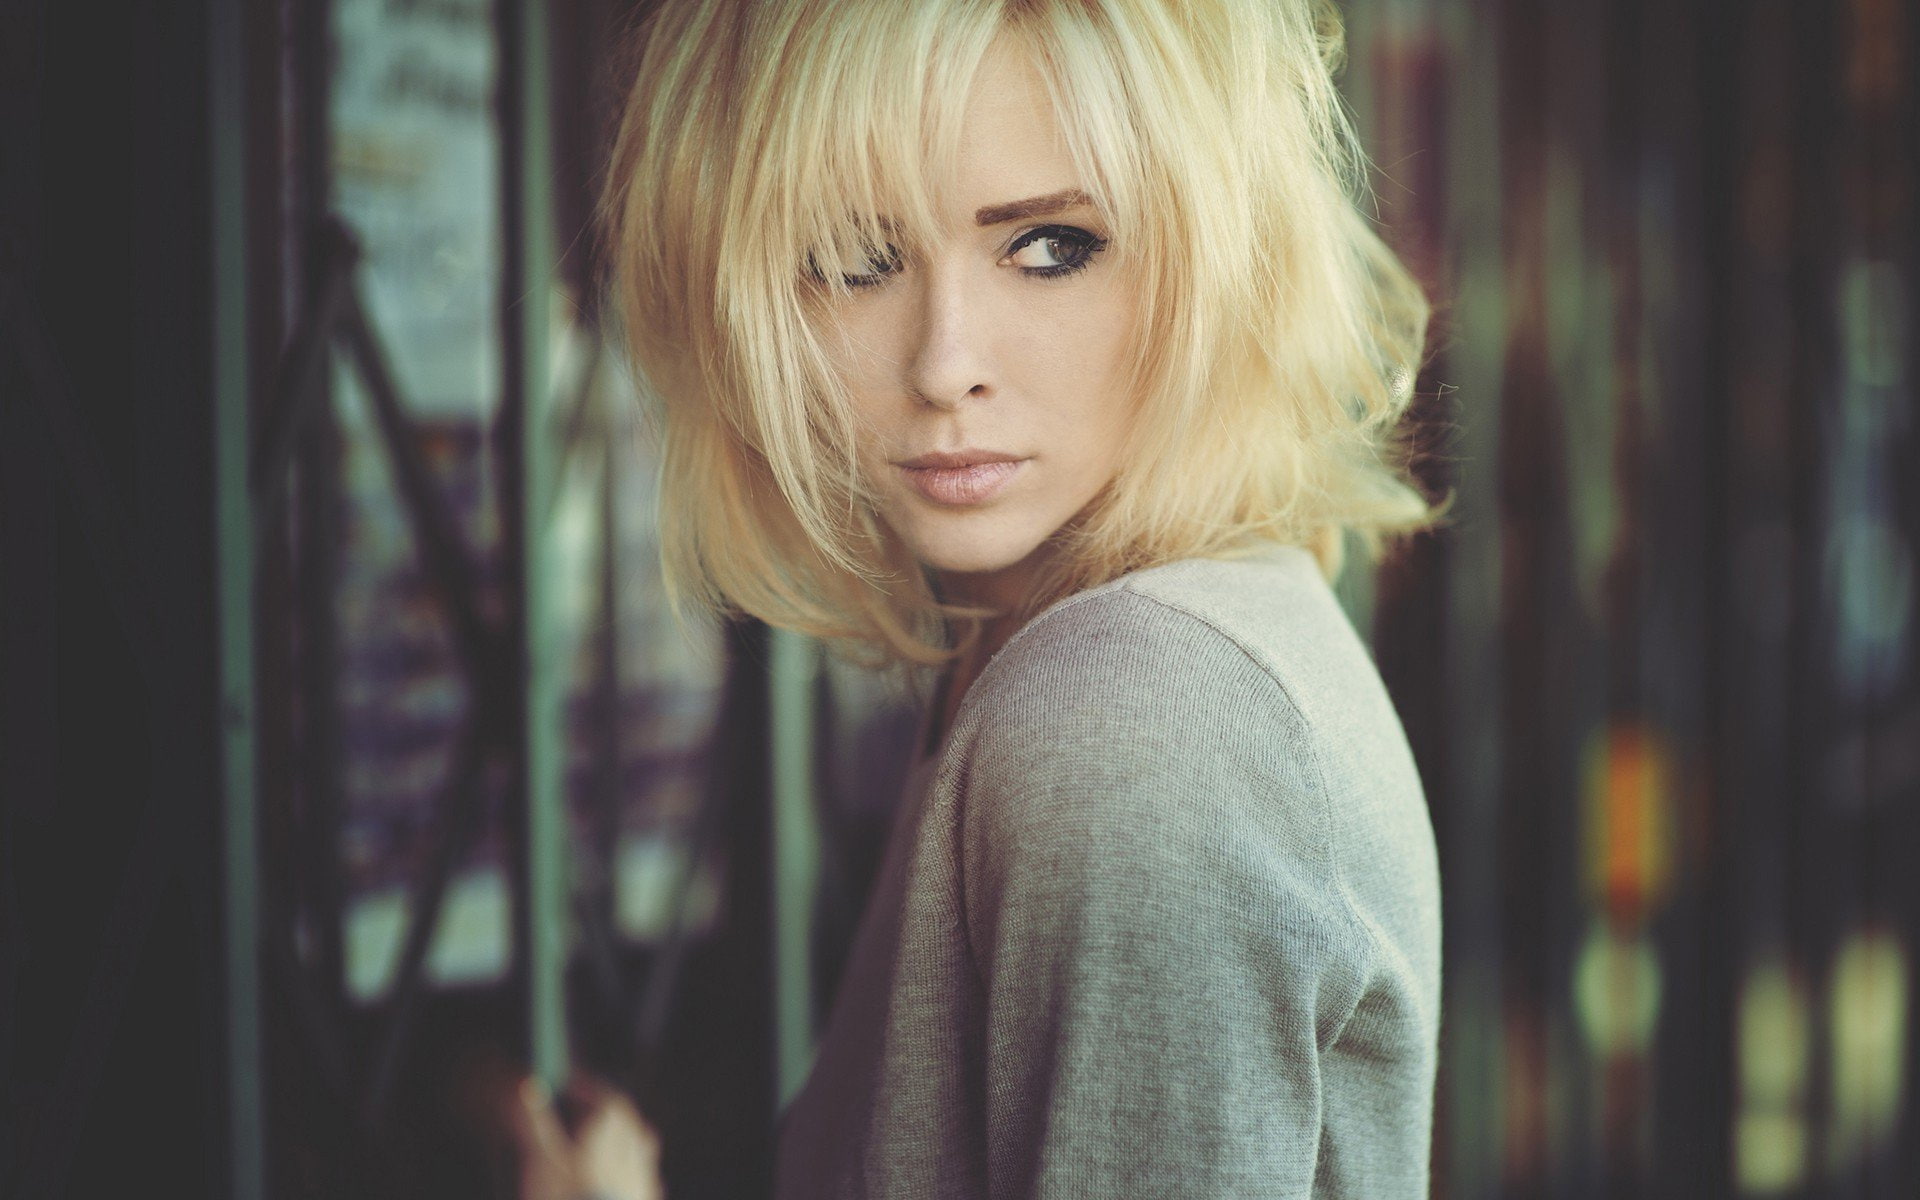 Free Download HD Wallpaper Models Alysha Nett American Blonde Green Eyes Woman